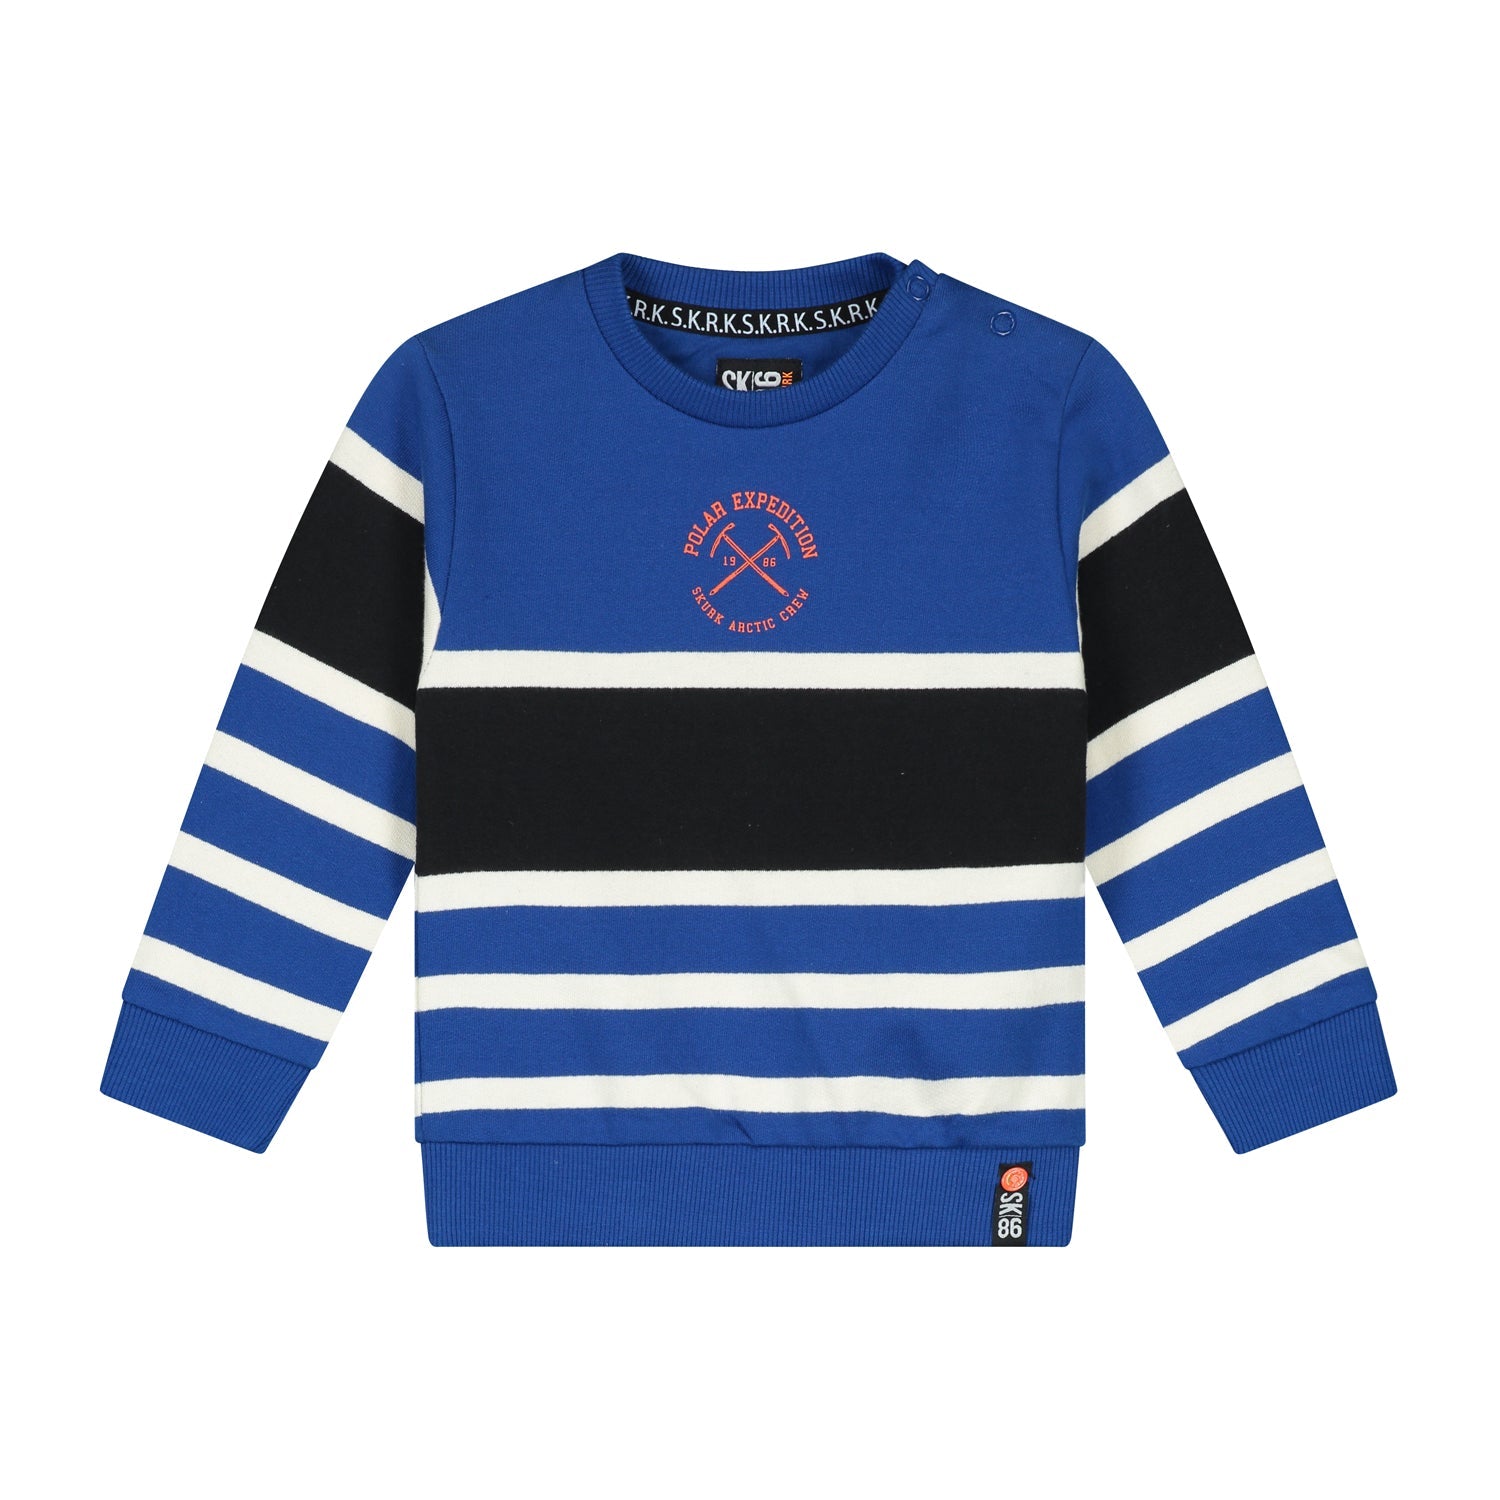 Jongens Sweater Stripe Blue van Skurk Little Rebel in de kleur Blue in maat 86.